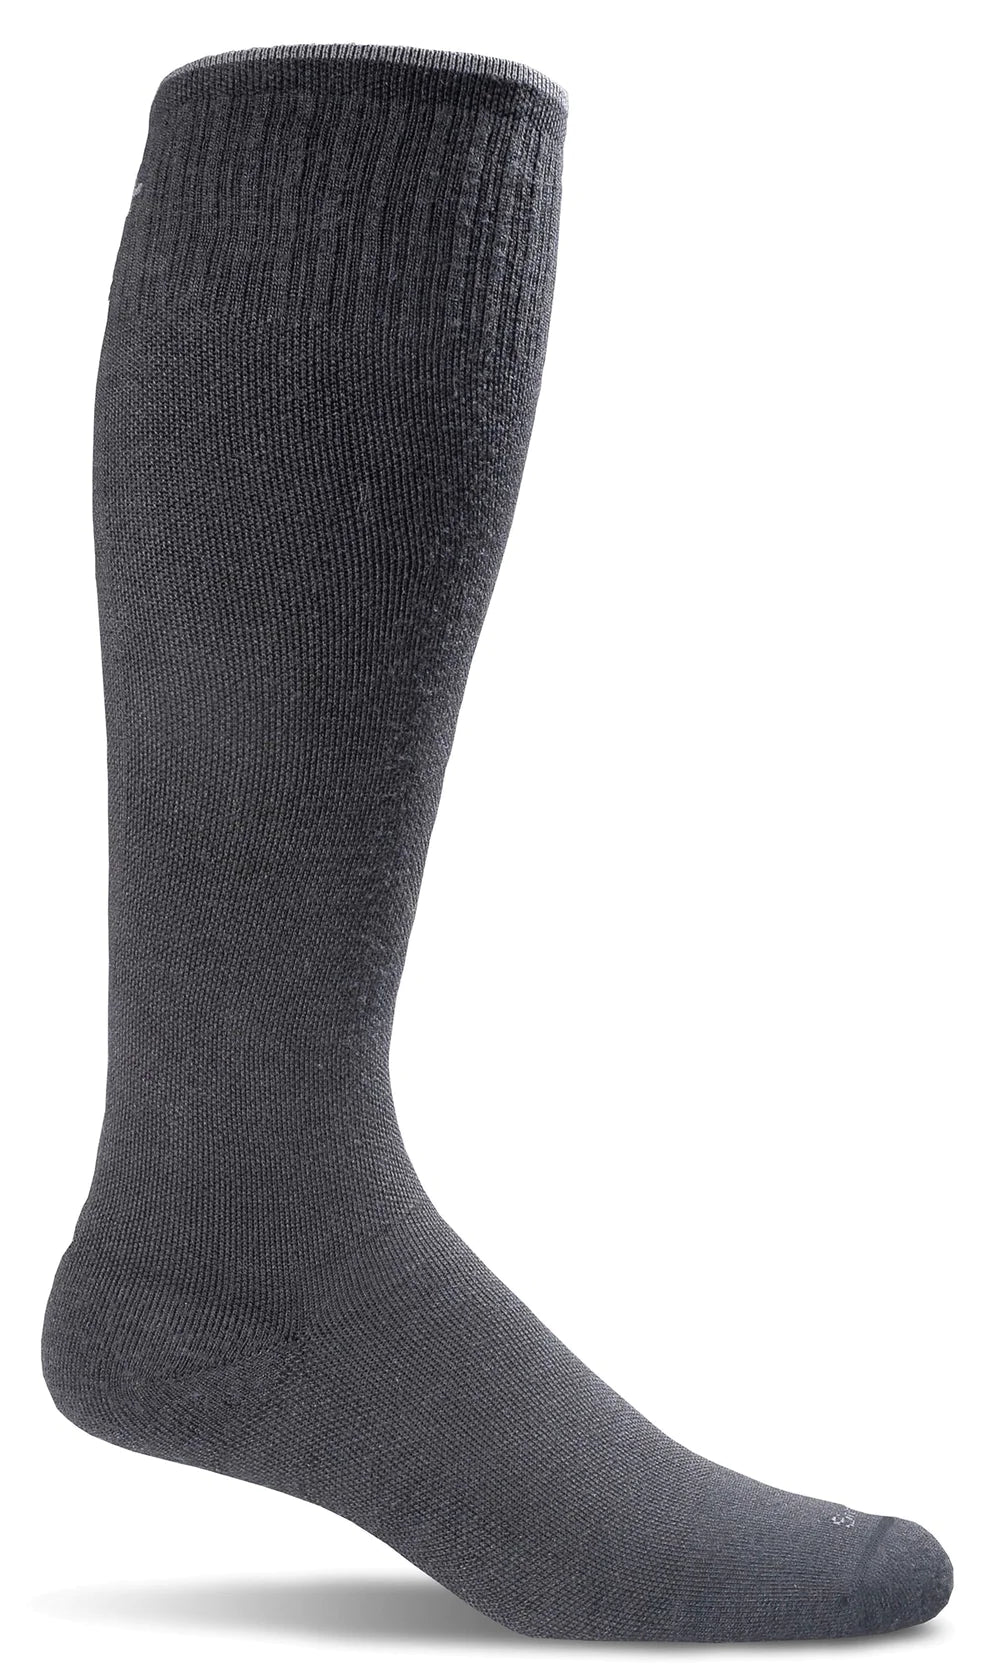 Sockwell - Women's Twister| Firm Graduated Compression Socks- Black